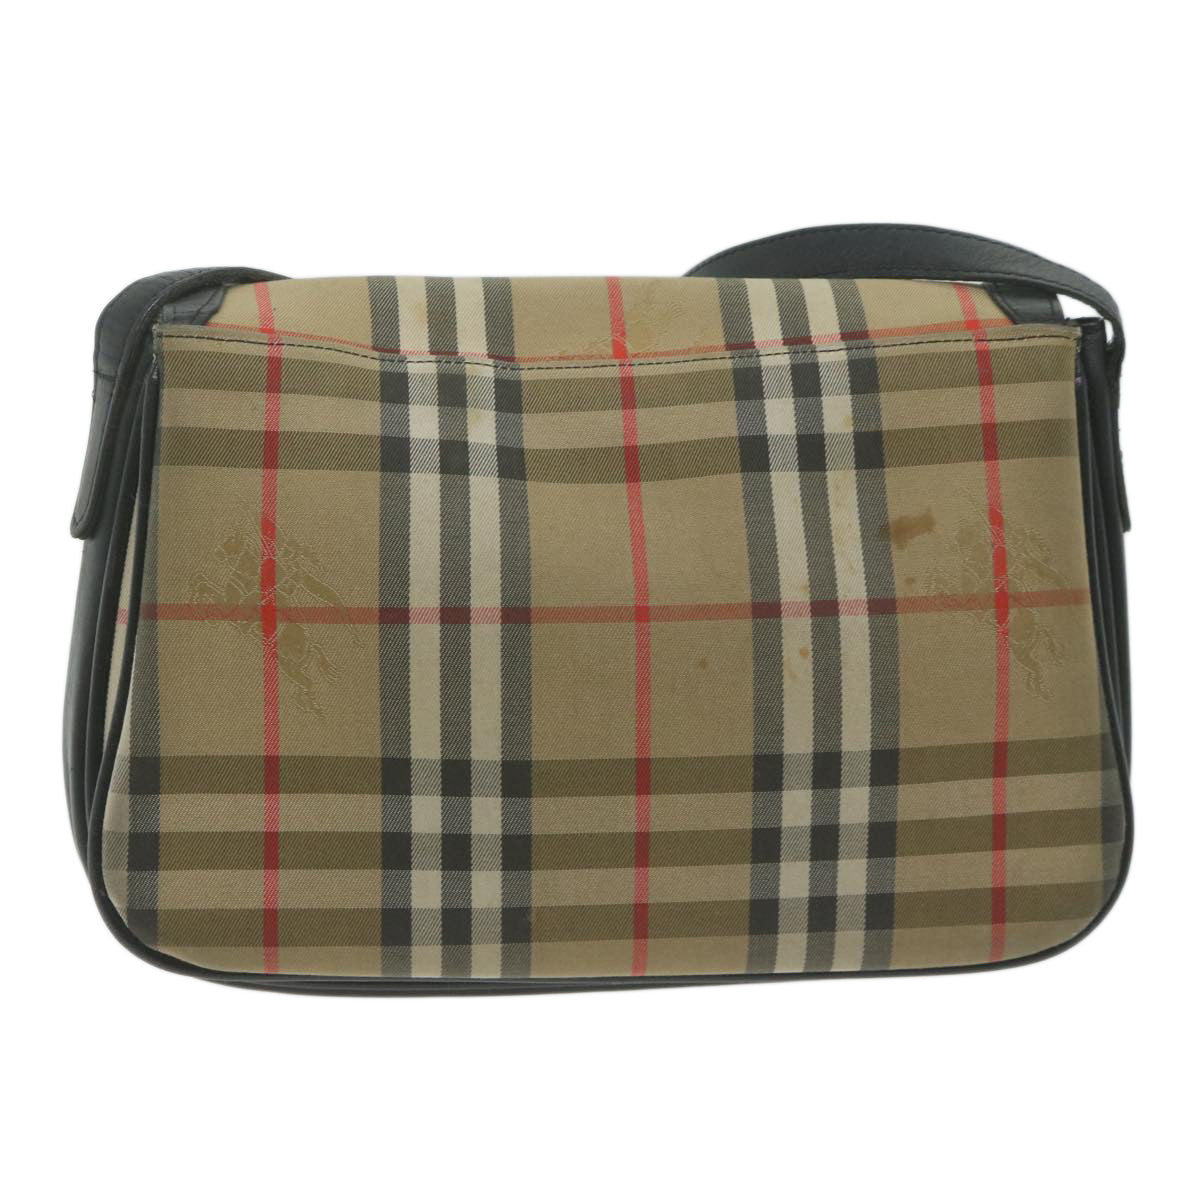 Burberrys Nova Check Shoulder Bag Canvas Beige Auth 63902 - 0